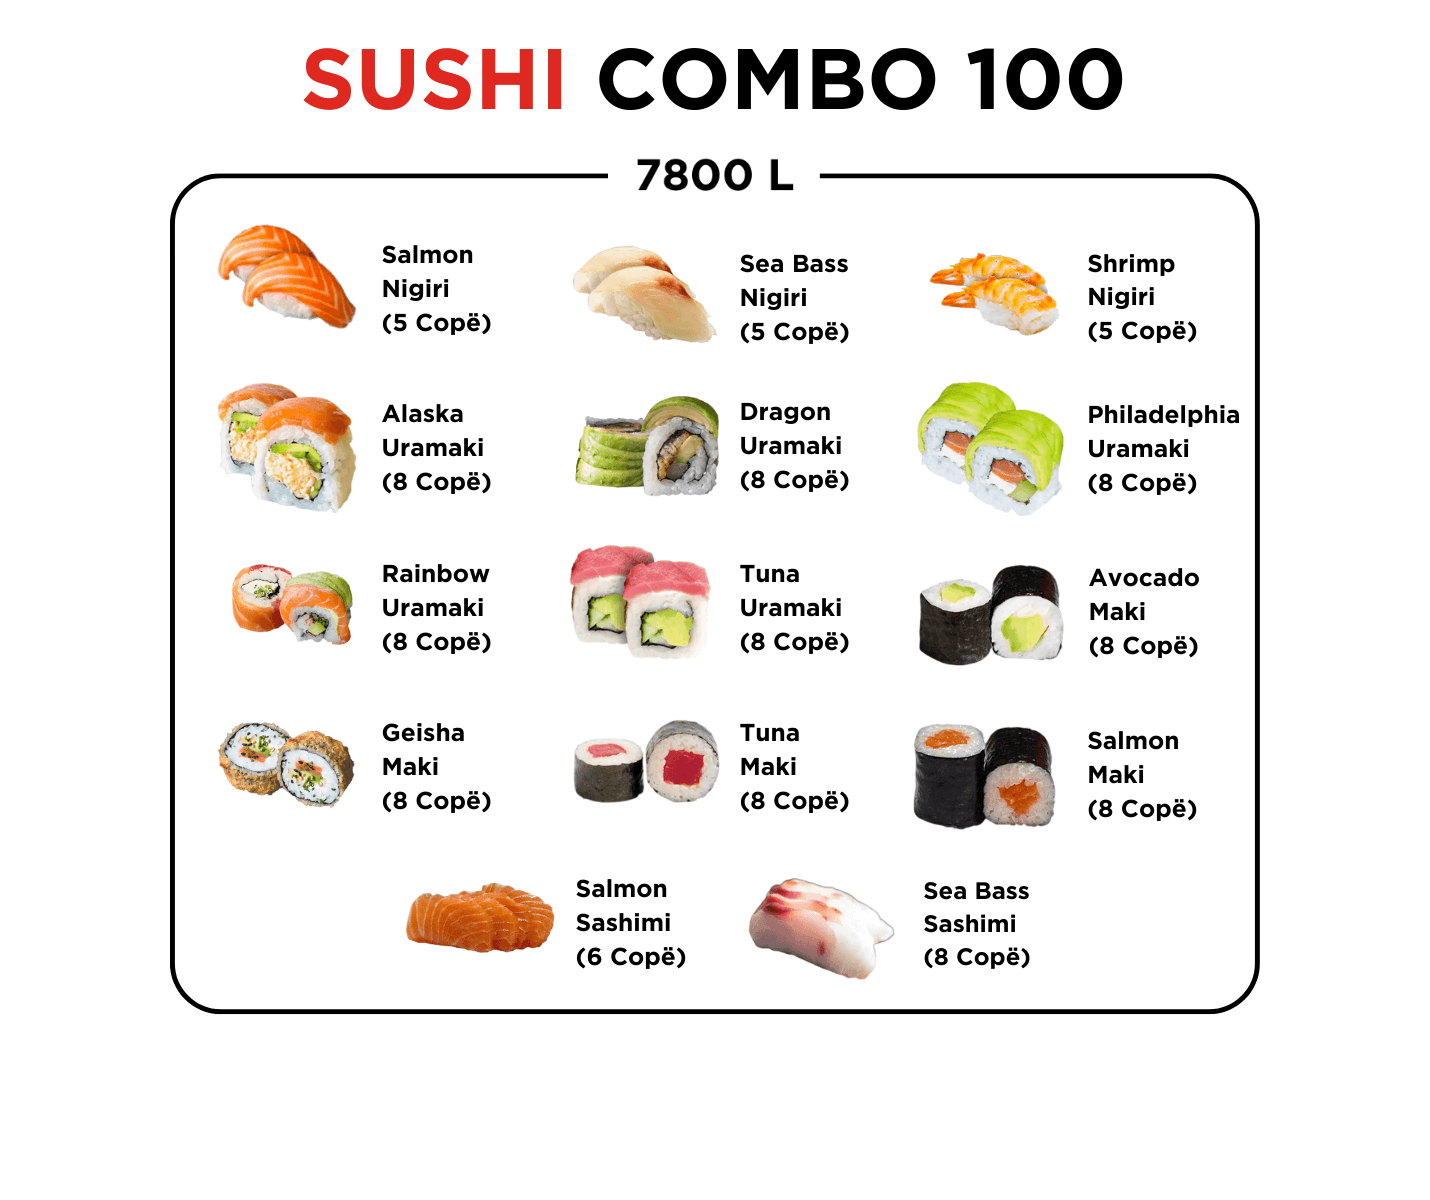 Sushi Combo 100